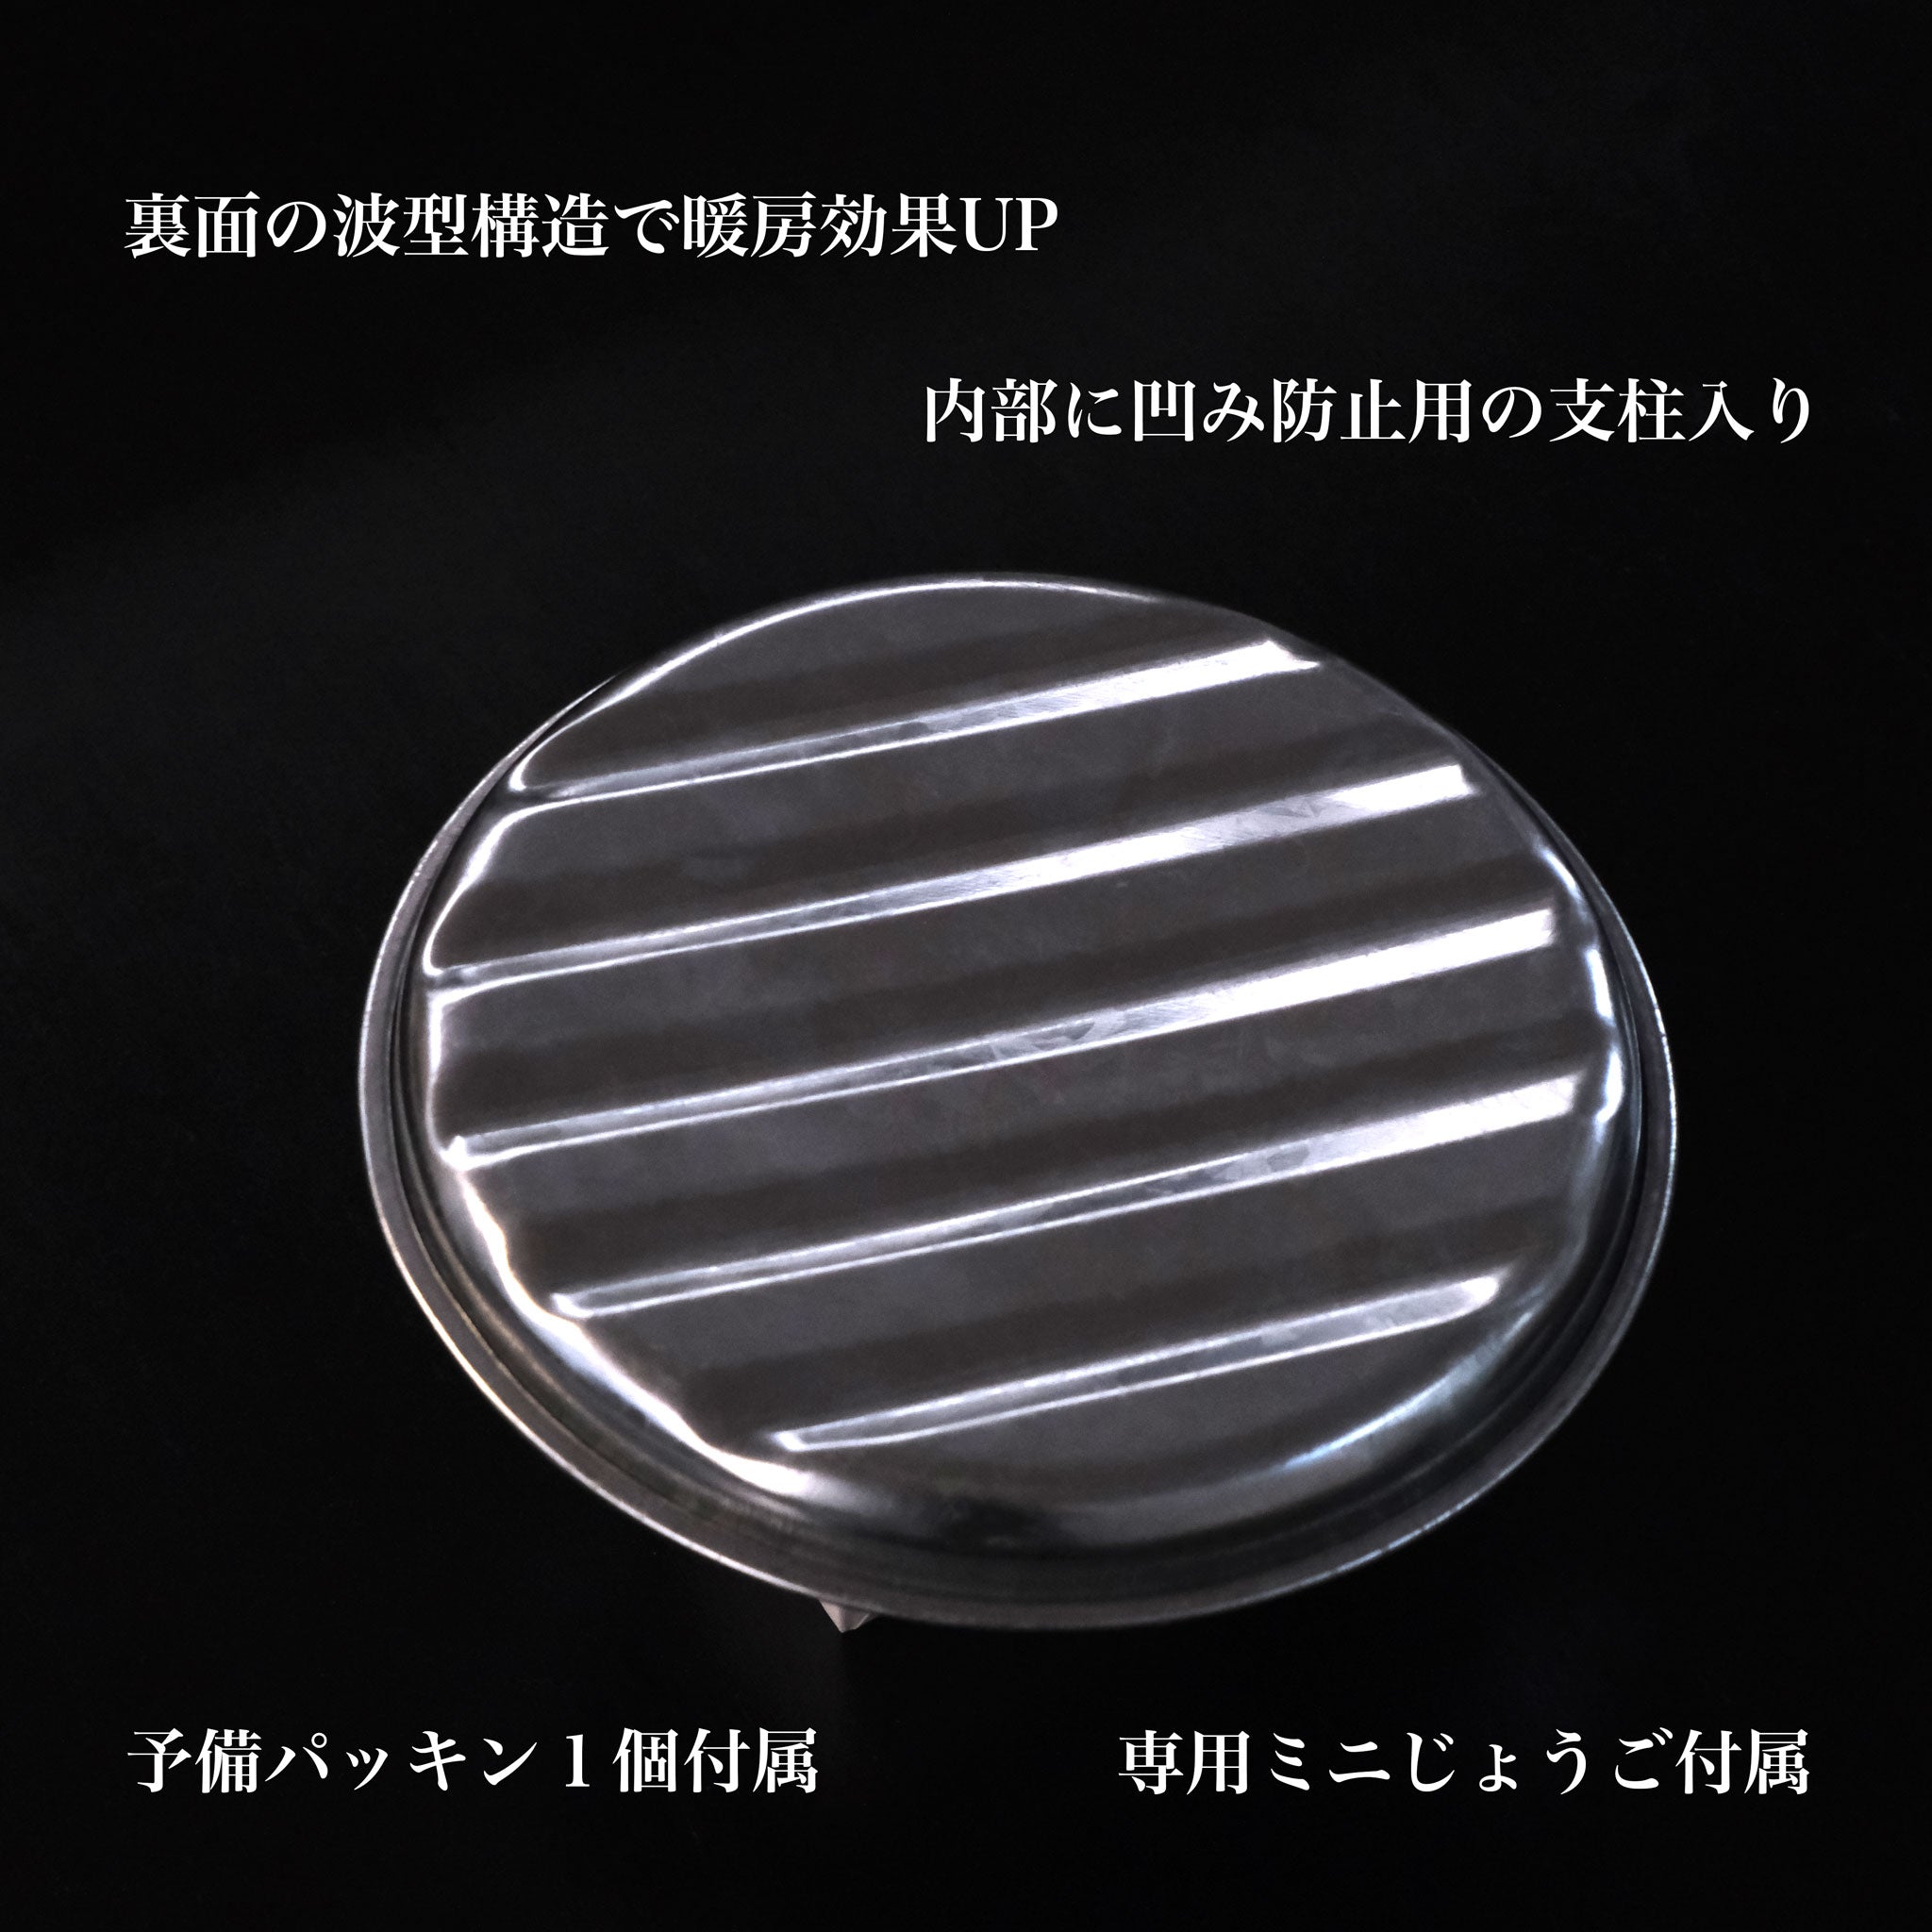 トタン製 湯たんぽ minimaru 大正15年創業の老舗メーカー製 SGマーク - OTONA-MONO